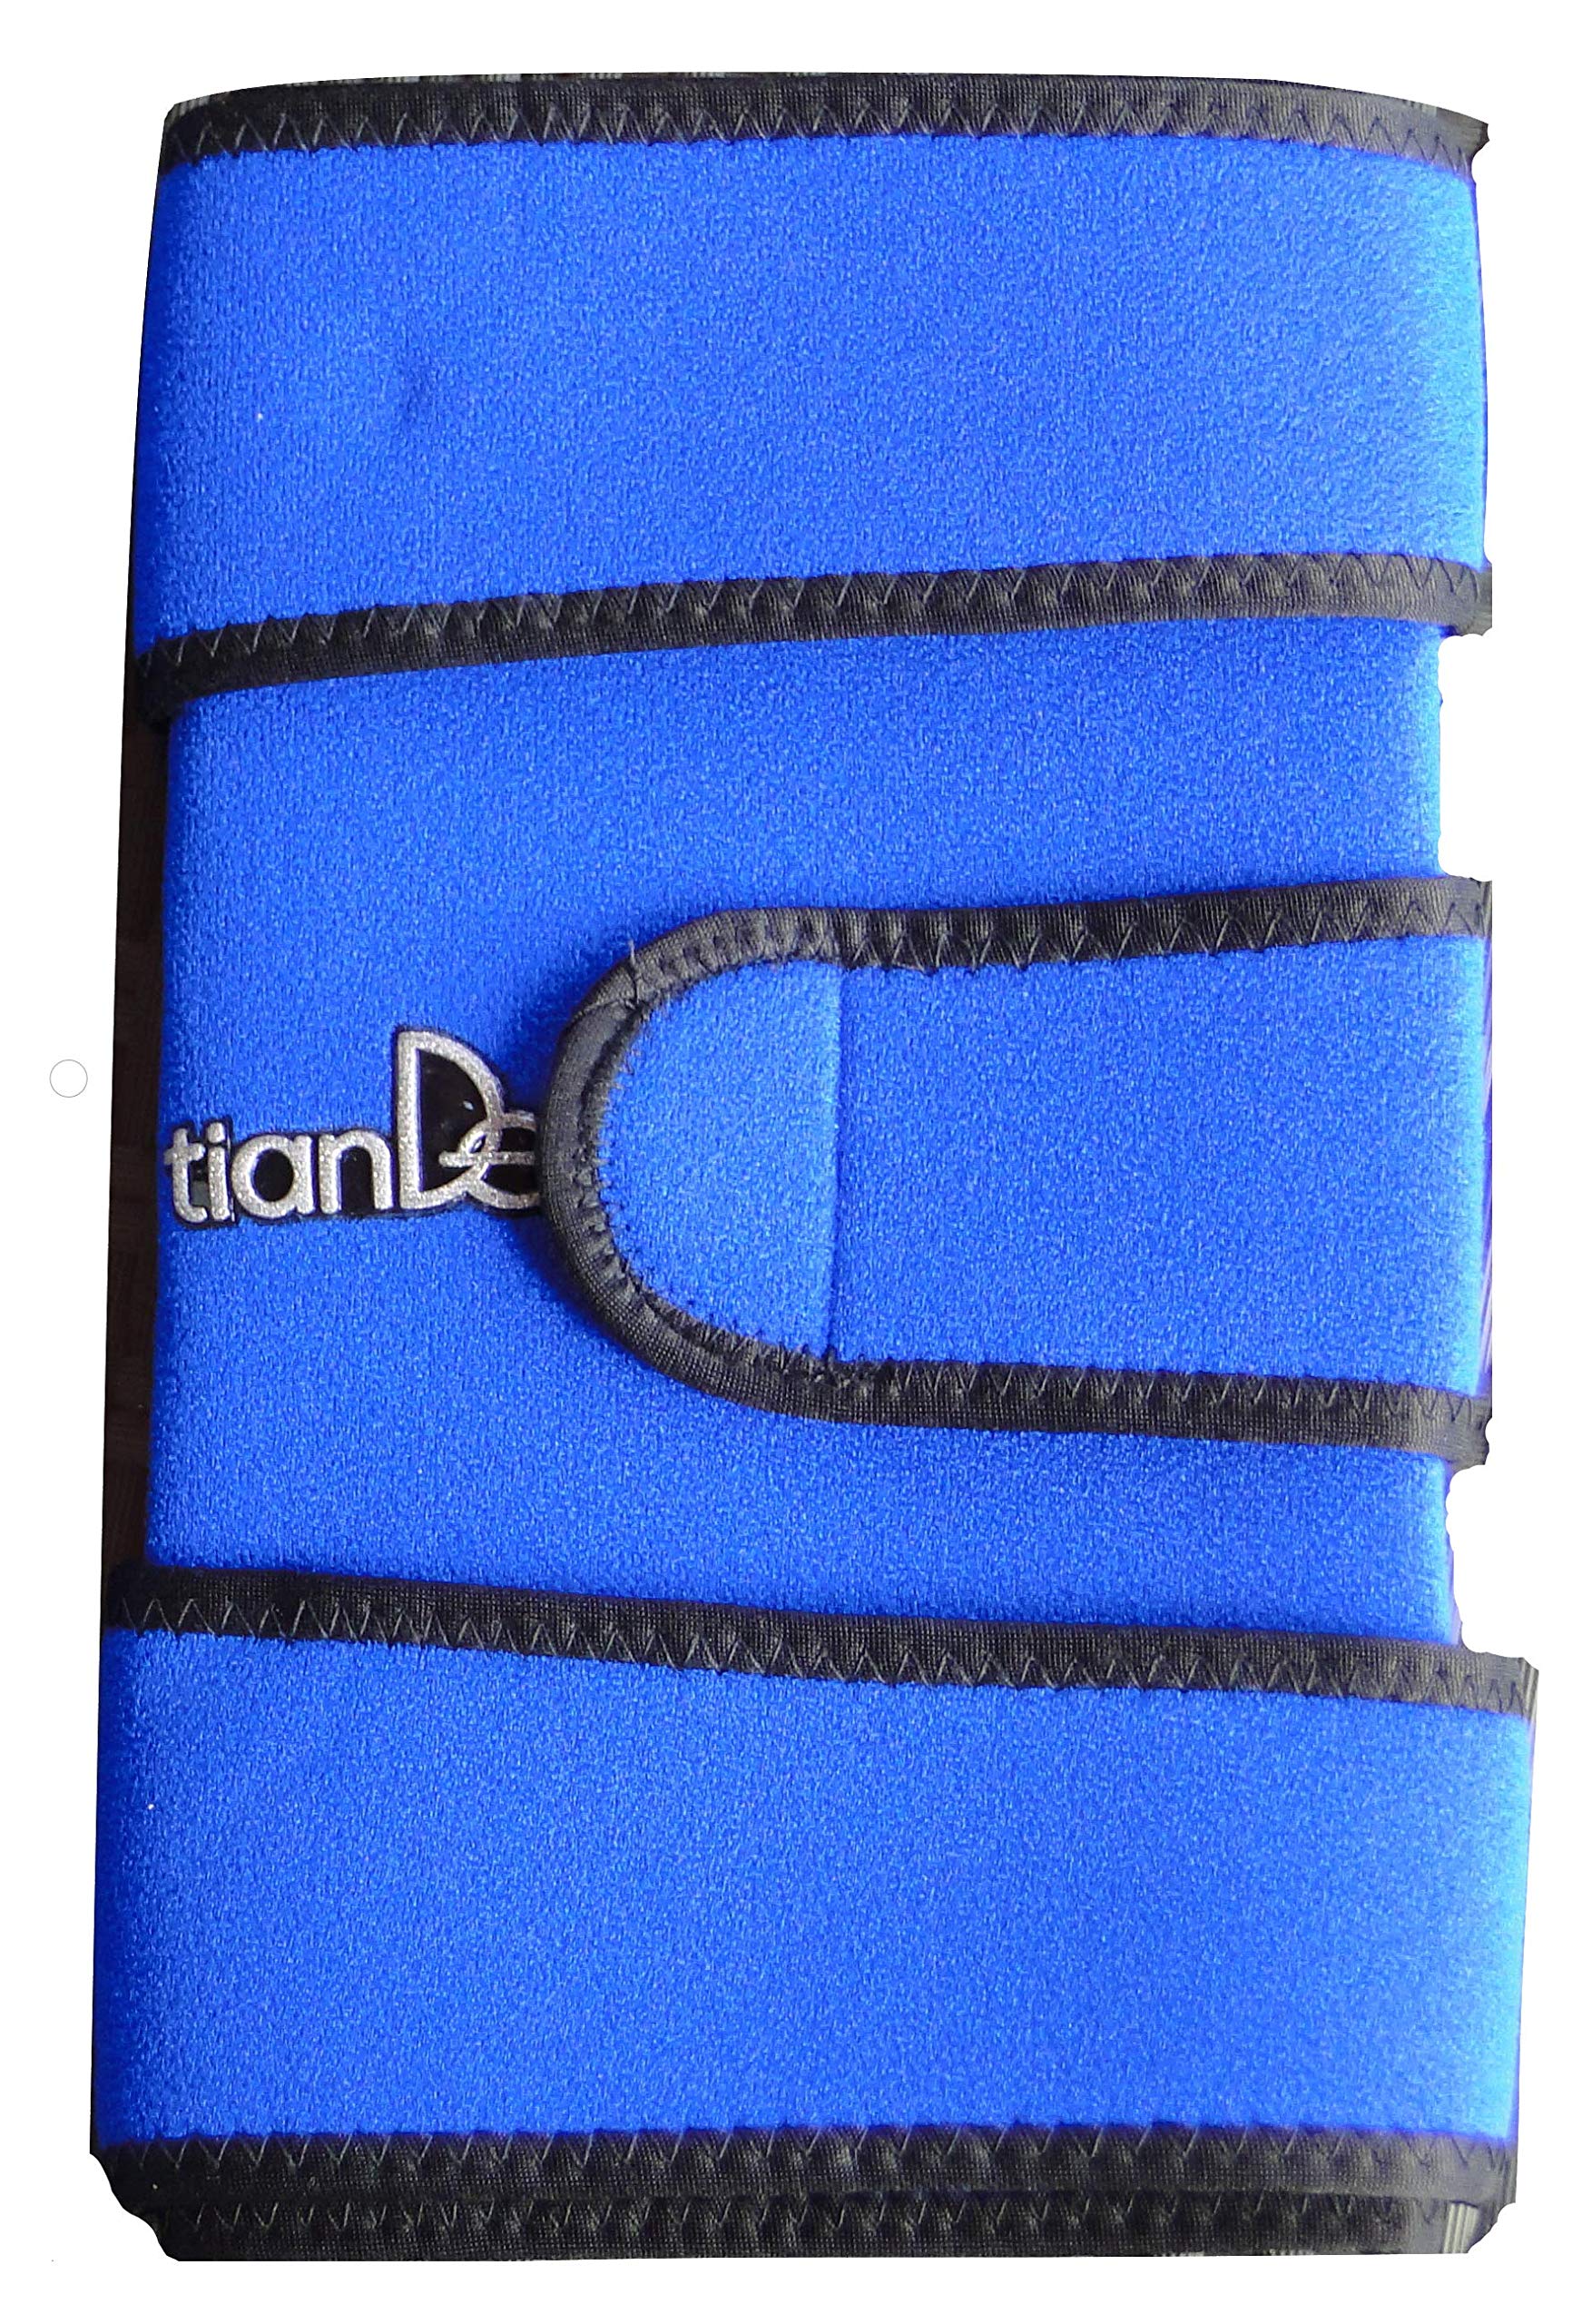 Knieschützer Mit einer Punktförmigen Turmalinschicht Für Mehr Bewegungsfreiheit Und Komfort - TianDe 30129-1 Stück